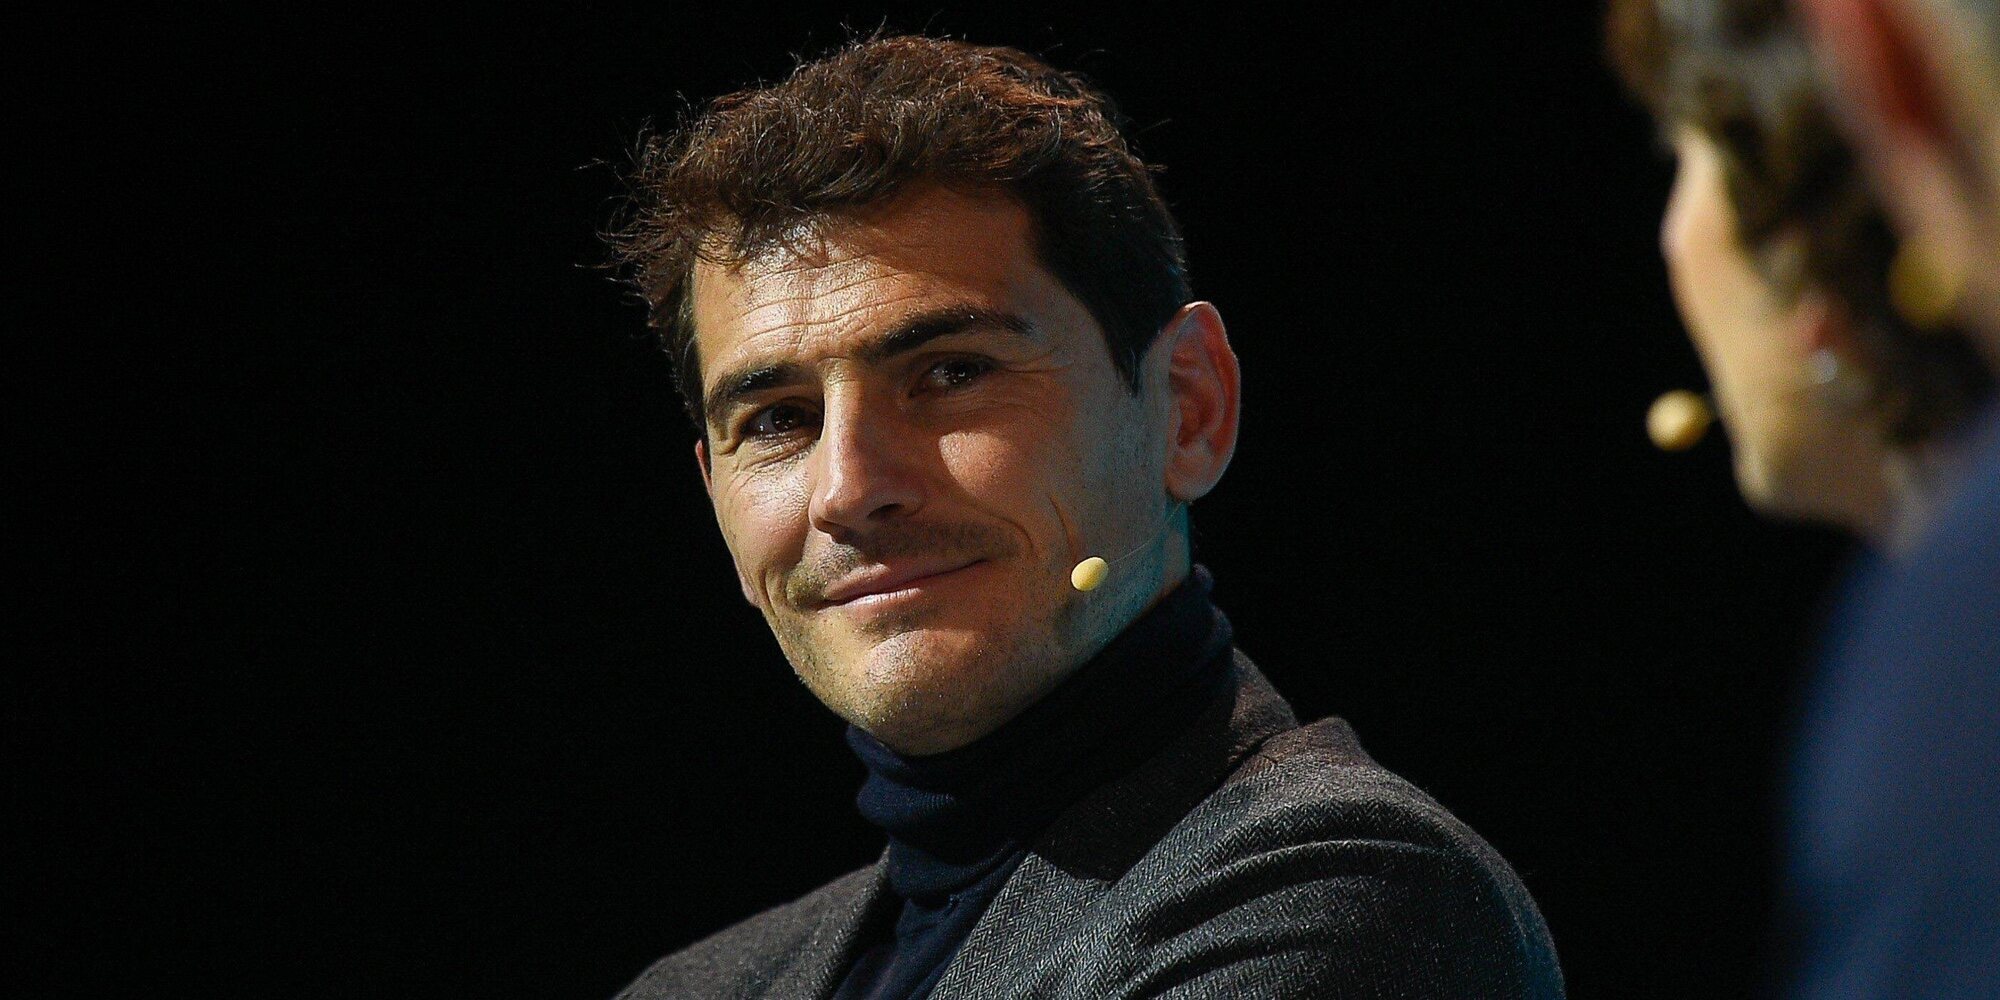 Iker Casillas podría tener algo más que una amistad con la periodista deportiva Ana Quiles